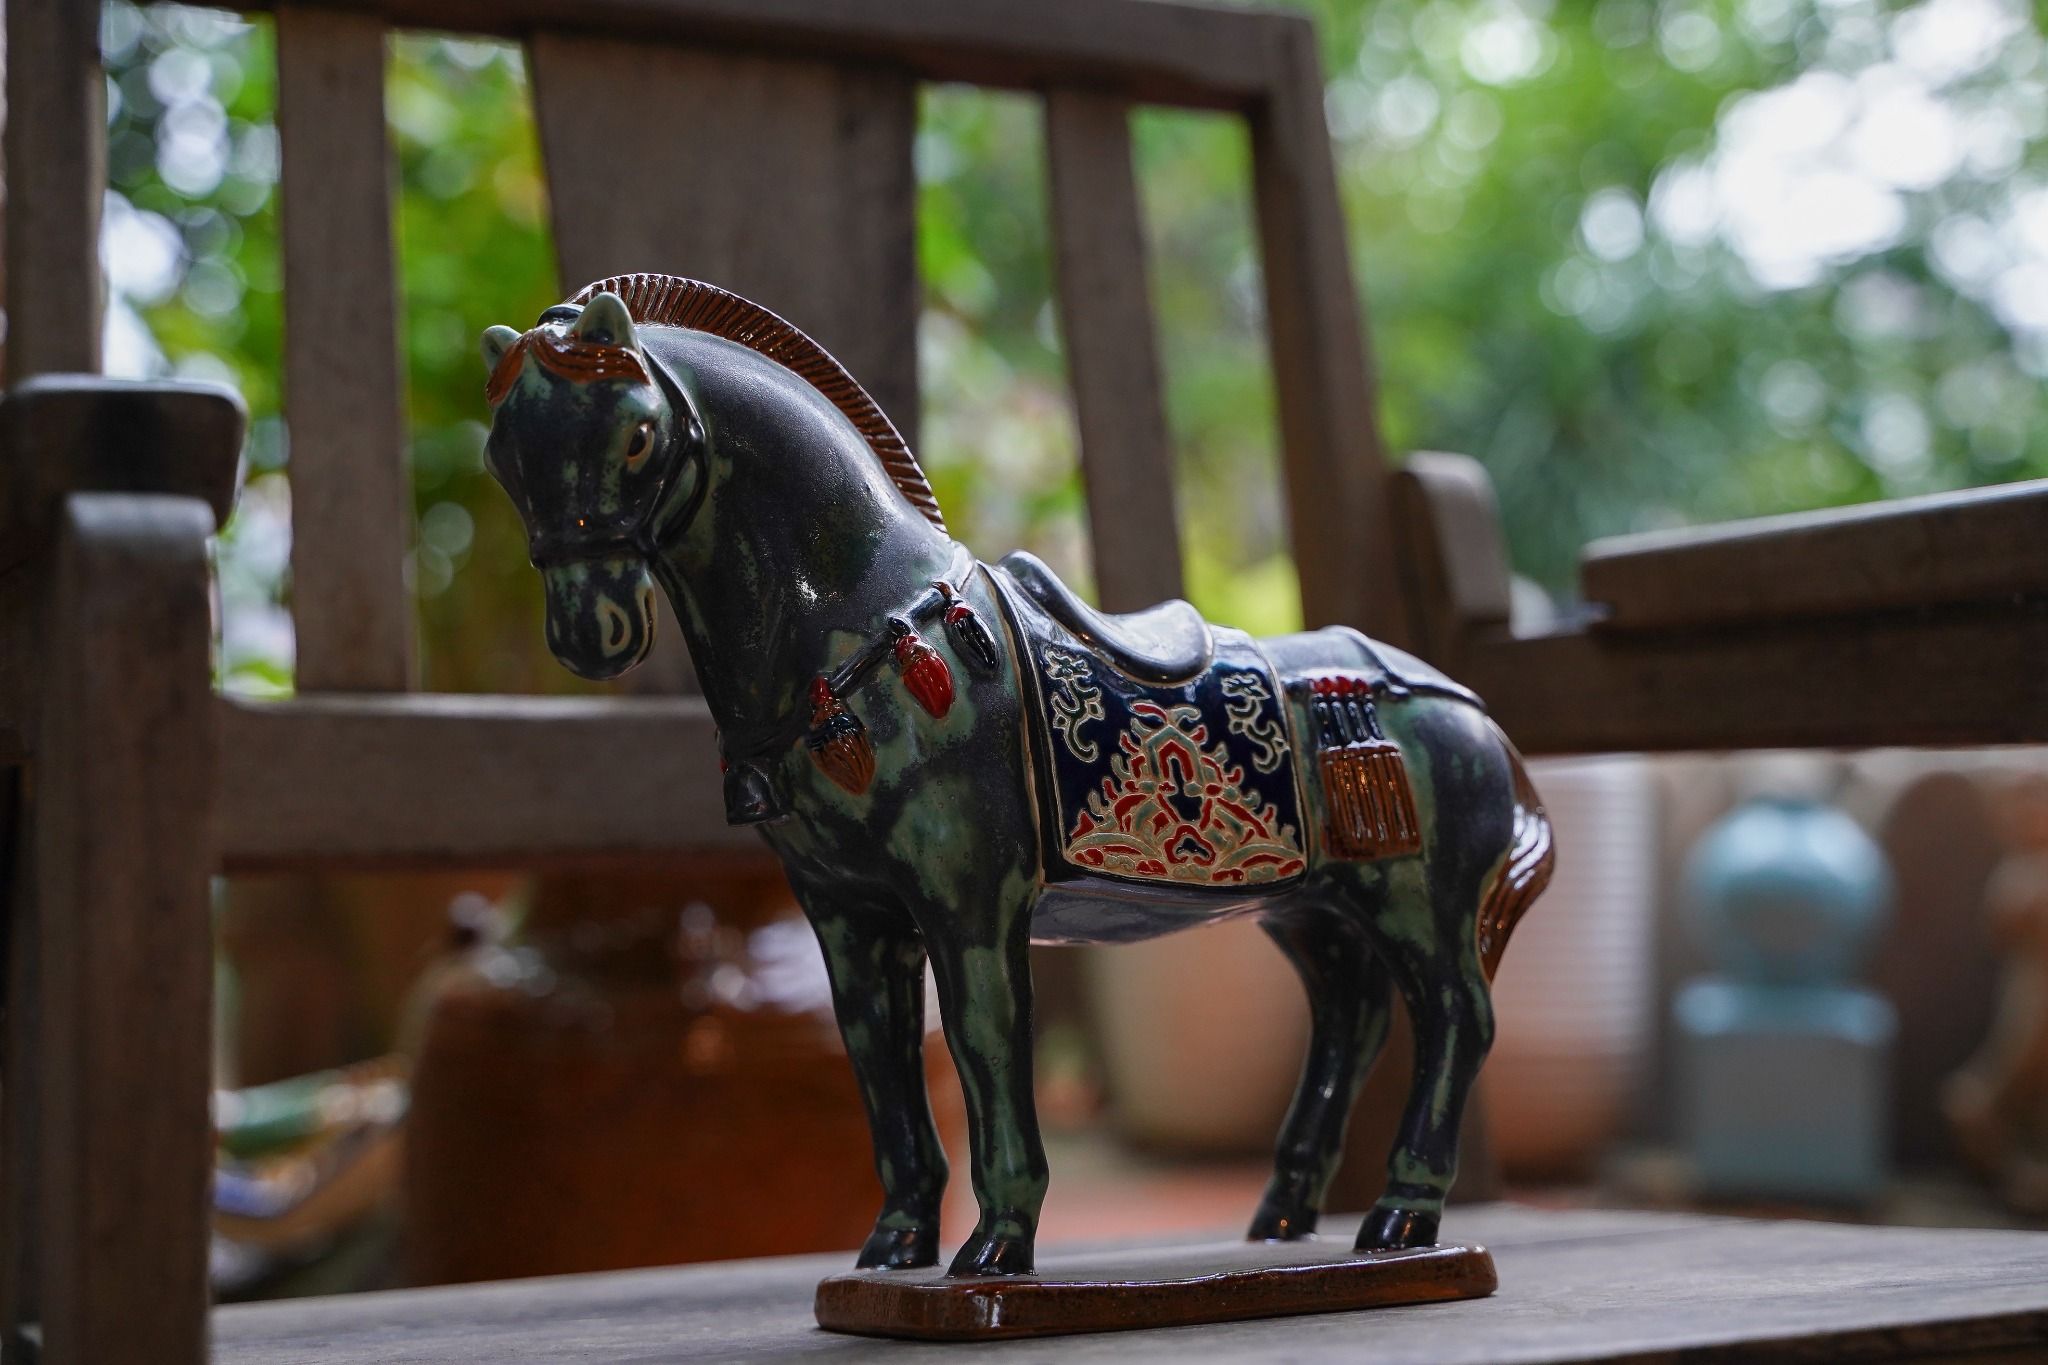  Ngựa gốm xanh lá loang đen, khắc thủ công hoa văn Cổ phục Việt, gốm Thủ Biên, C17 x R25cm 